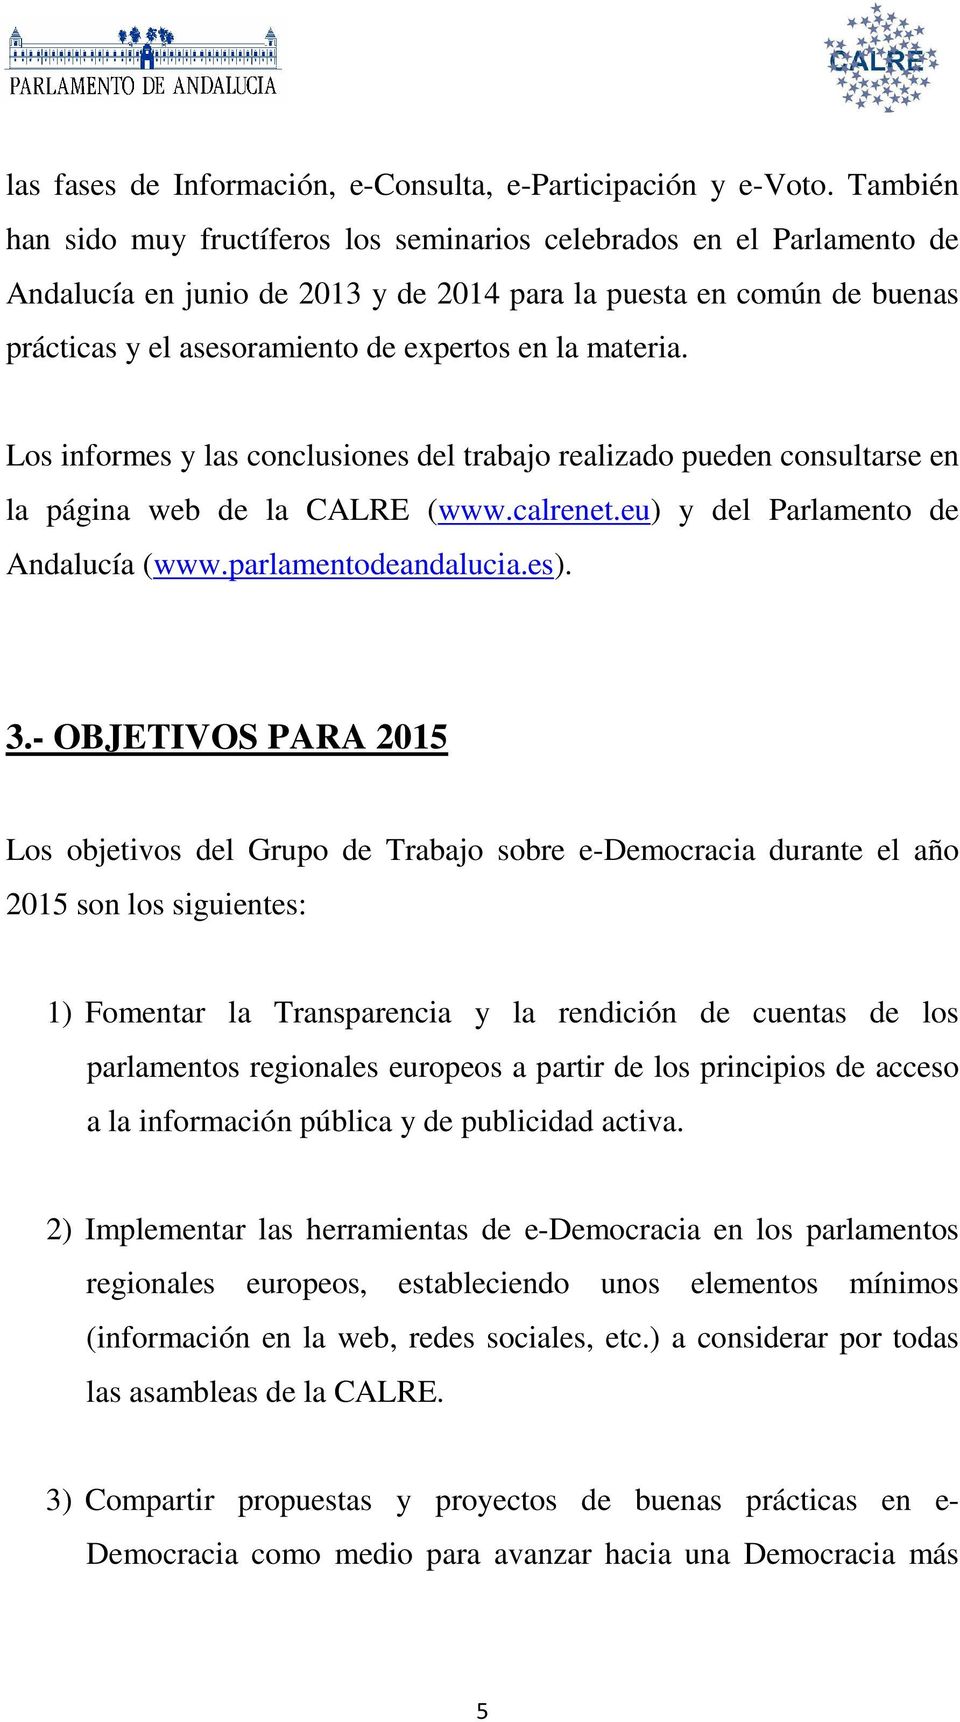 materia. Los informes y las conclusiones del trabajo realizado pueden consultarse en la página web de la CALRE (www.calrenet.eu) y del Parlamento de Andalucía (www.parlamentodeandalucia.es). 3.